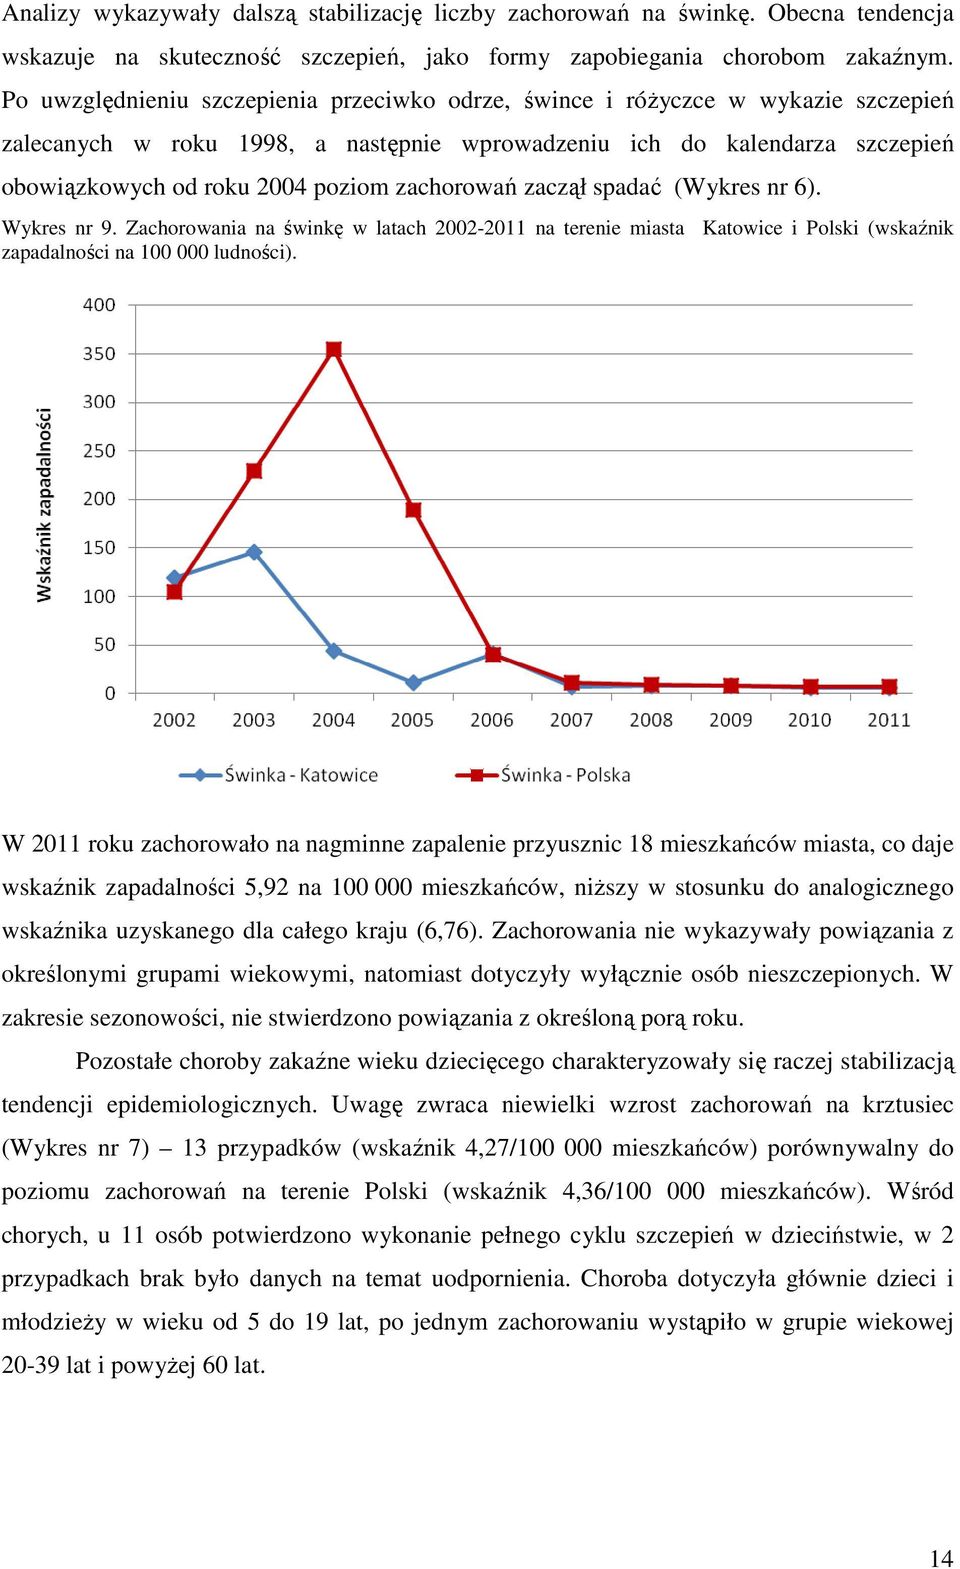 zachorowań zaczął spadać (Wykres nr 6). Wykres nr 9. Zachorowania na świnkę w latach 2002-2011 na terenie miasta Katowice i Polski (wskaźnik zapadalności na 100 000 ludności).